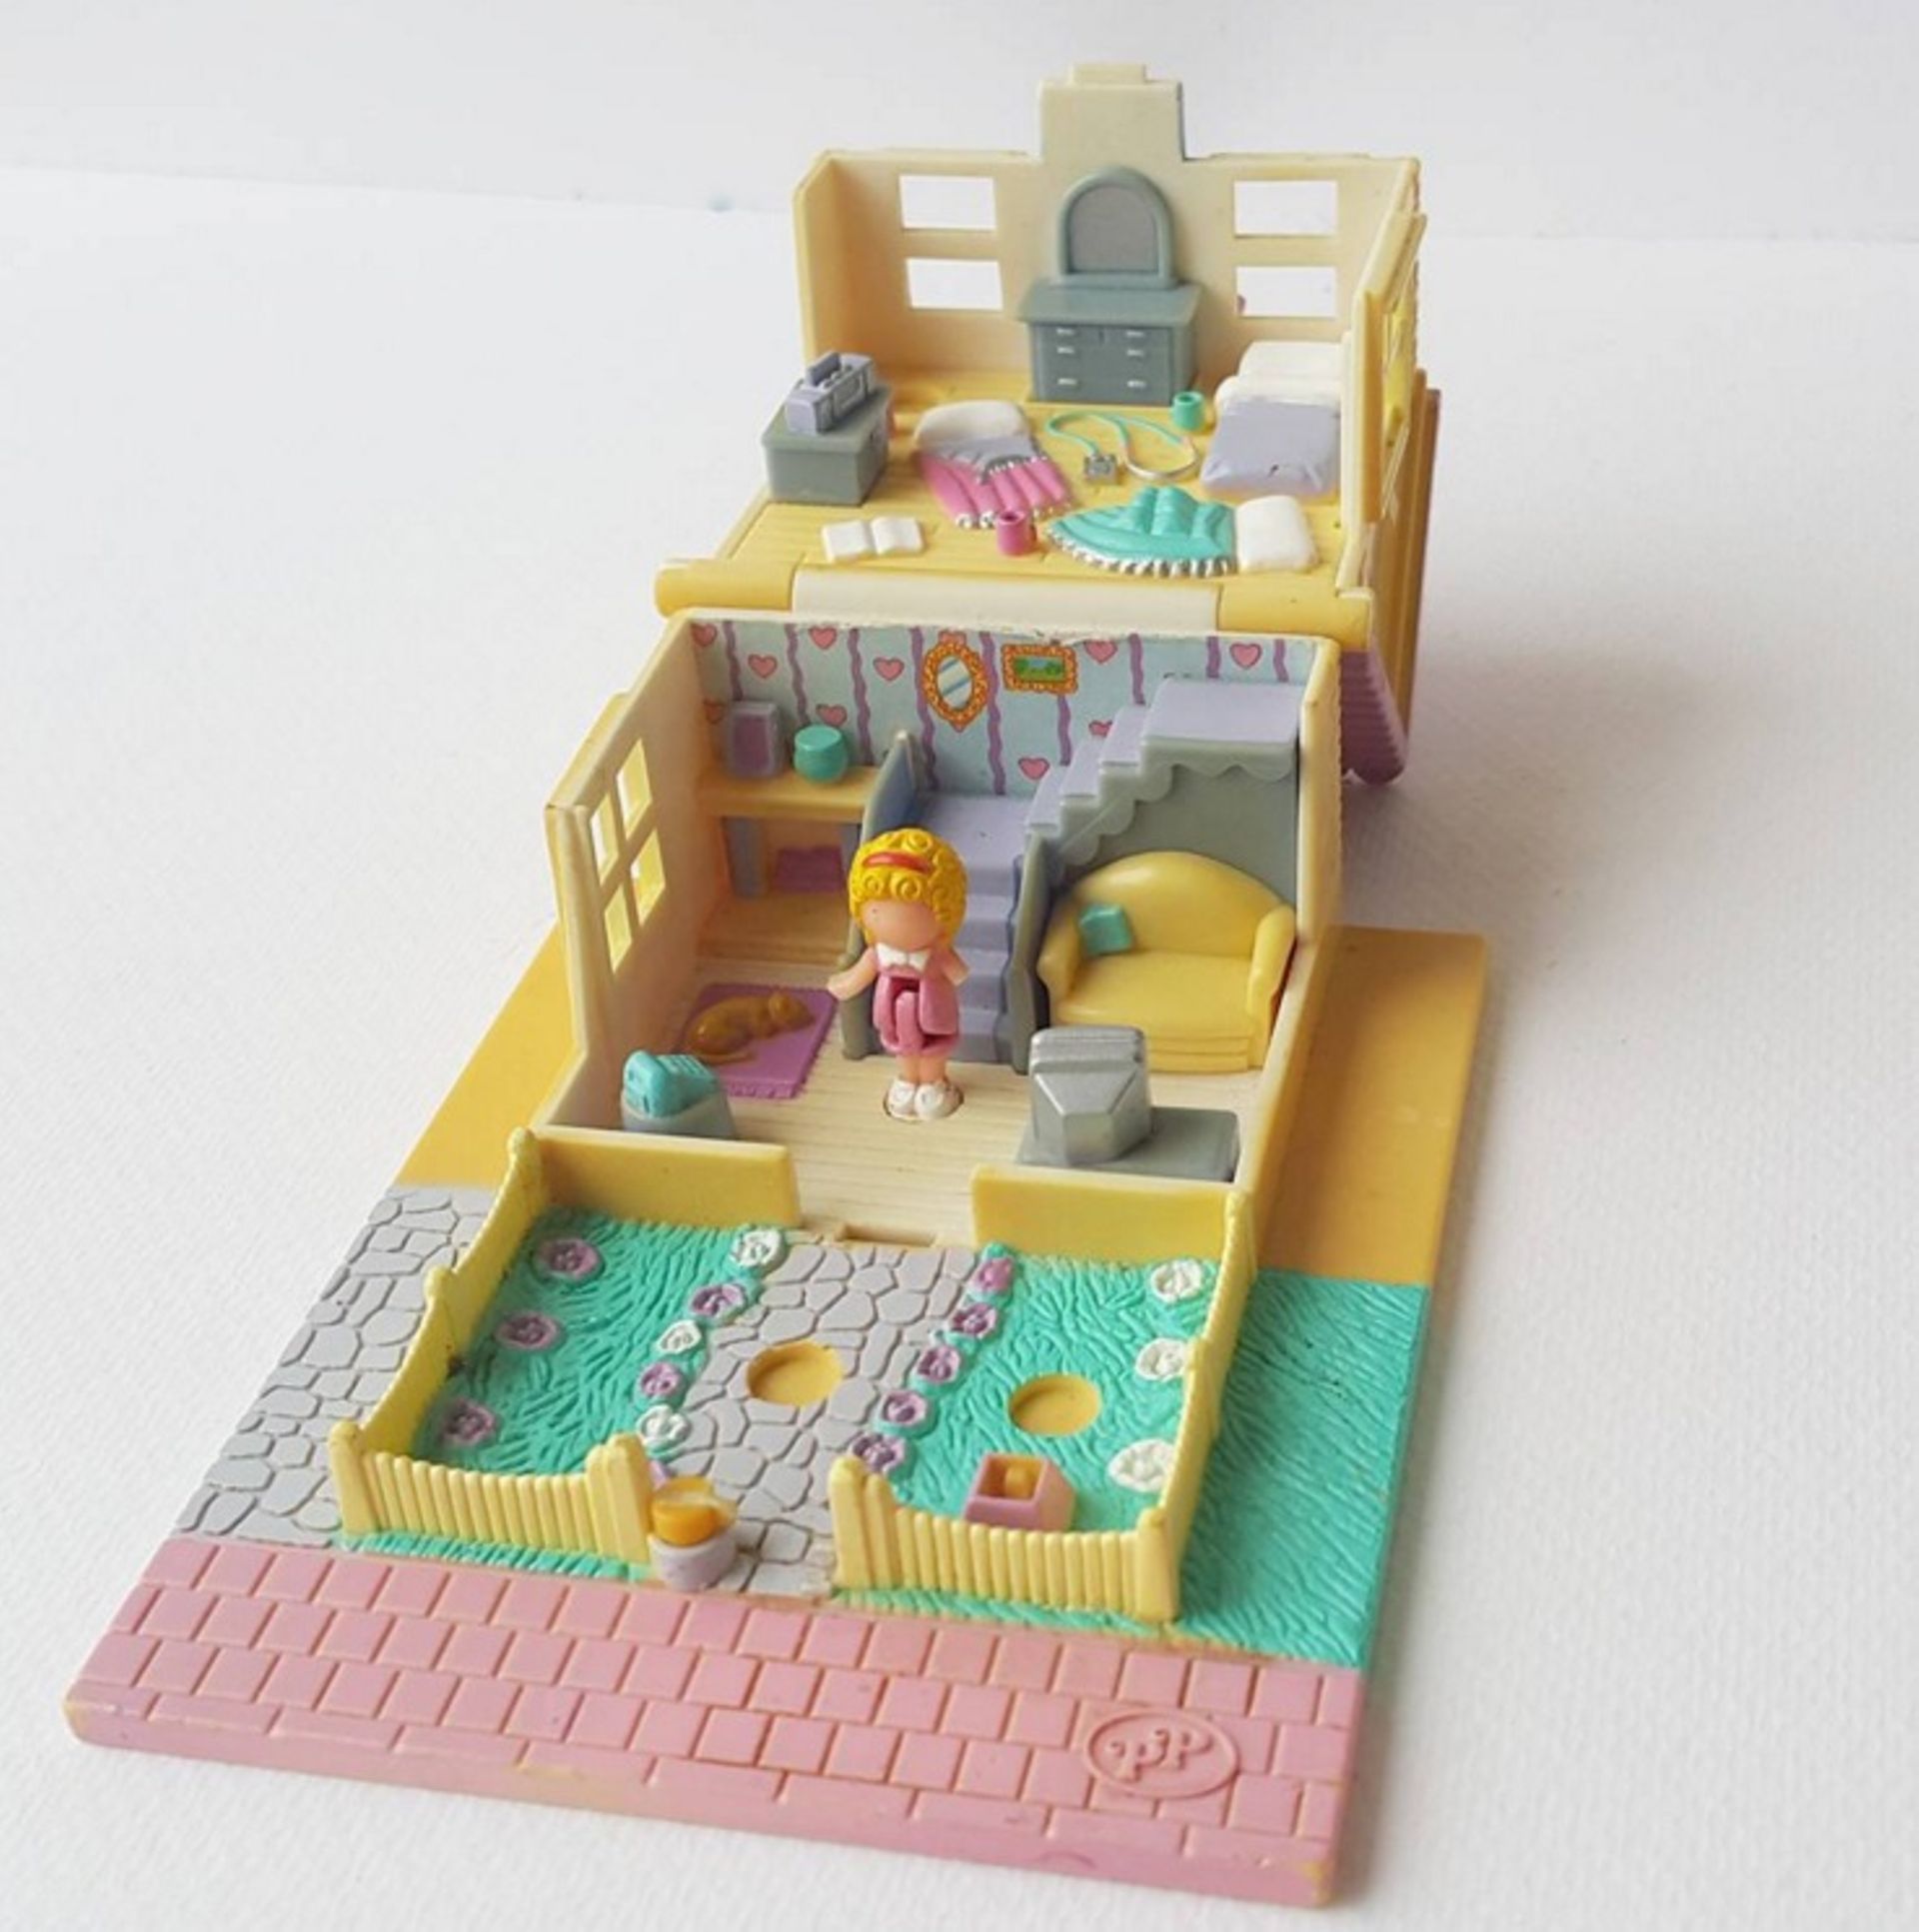 Les inoubliables jouets Polly Pocket à l'honneur sur Instagram 